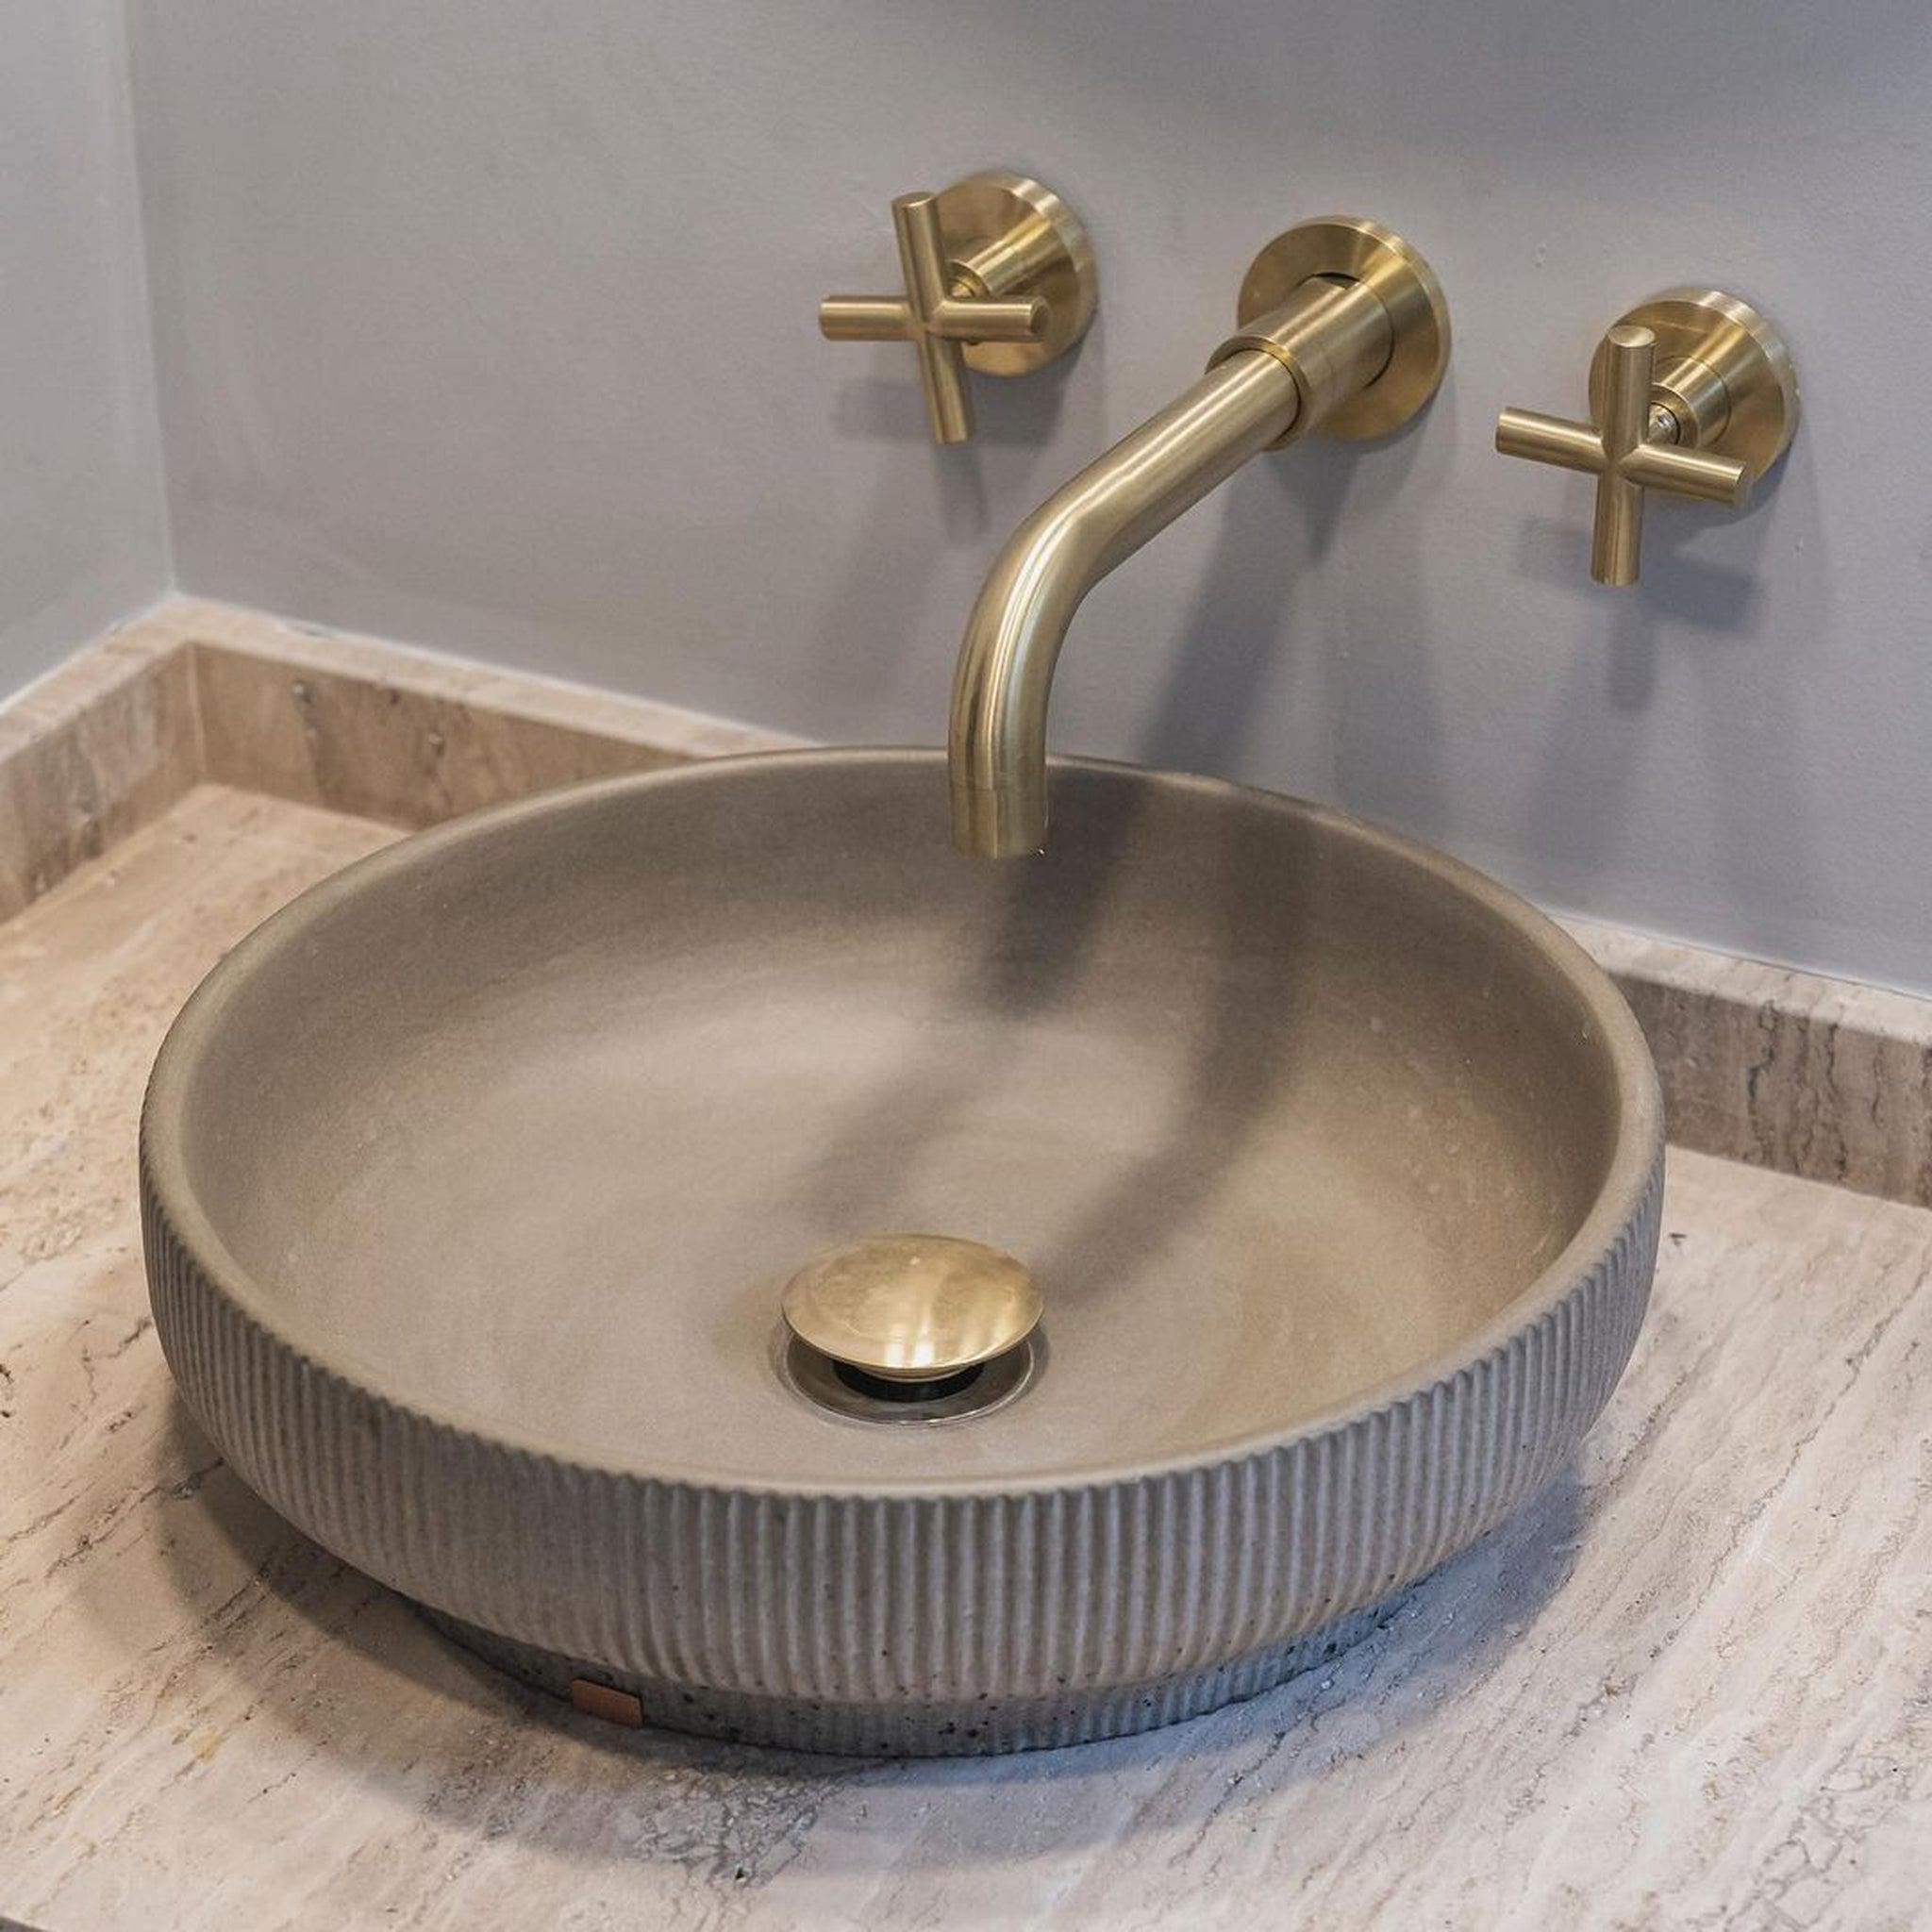 Konkretus, Konkretus Lotus01 15" Rain Gray Top Mount Vessel Concrete Bathroom Sink